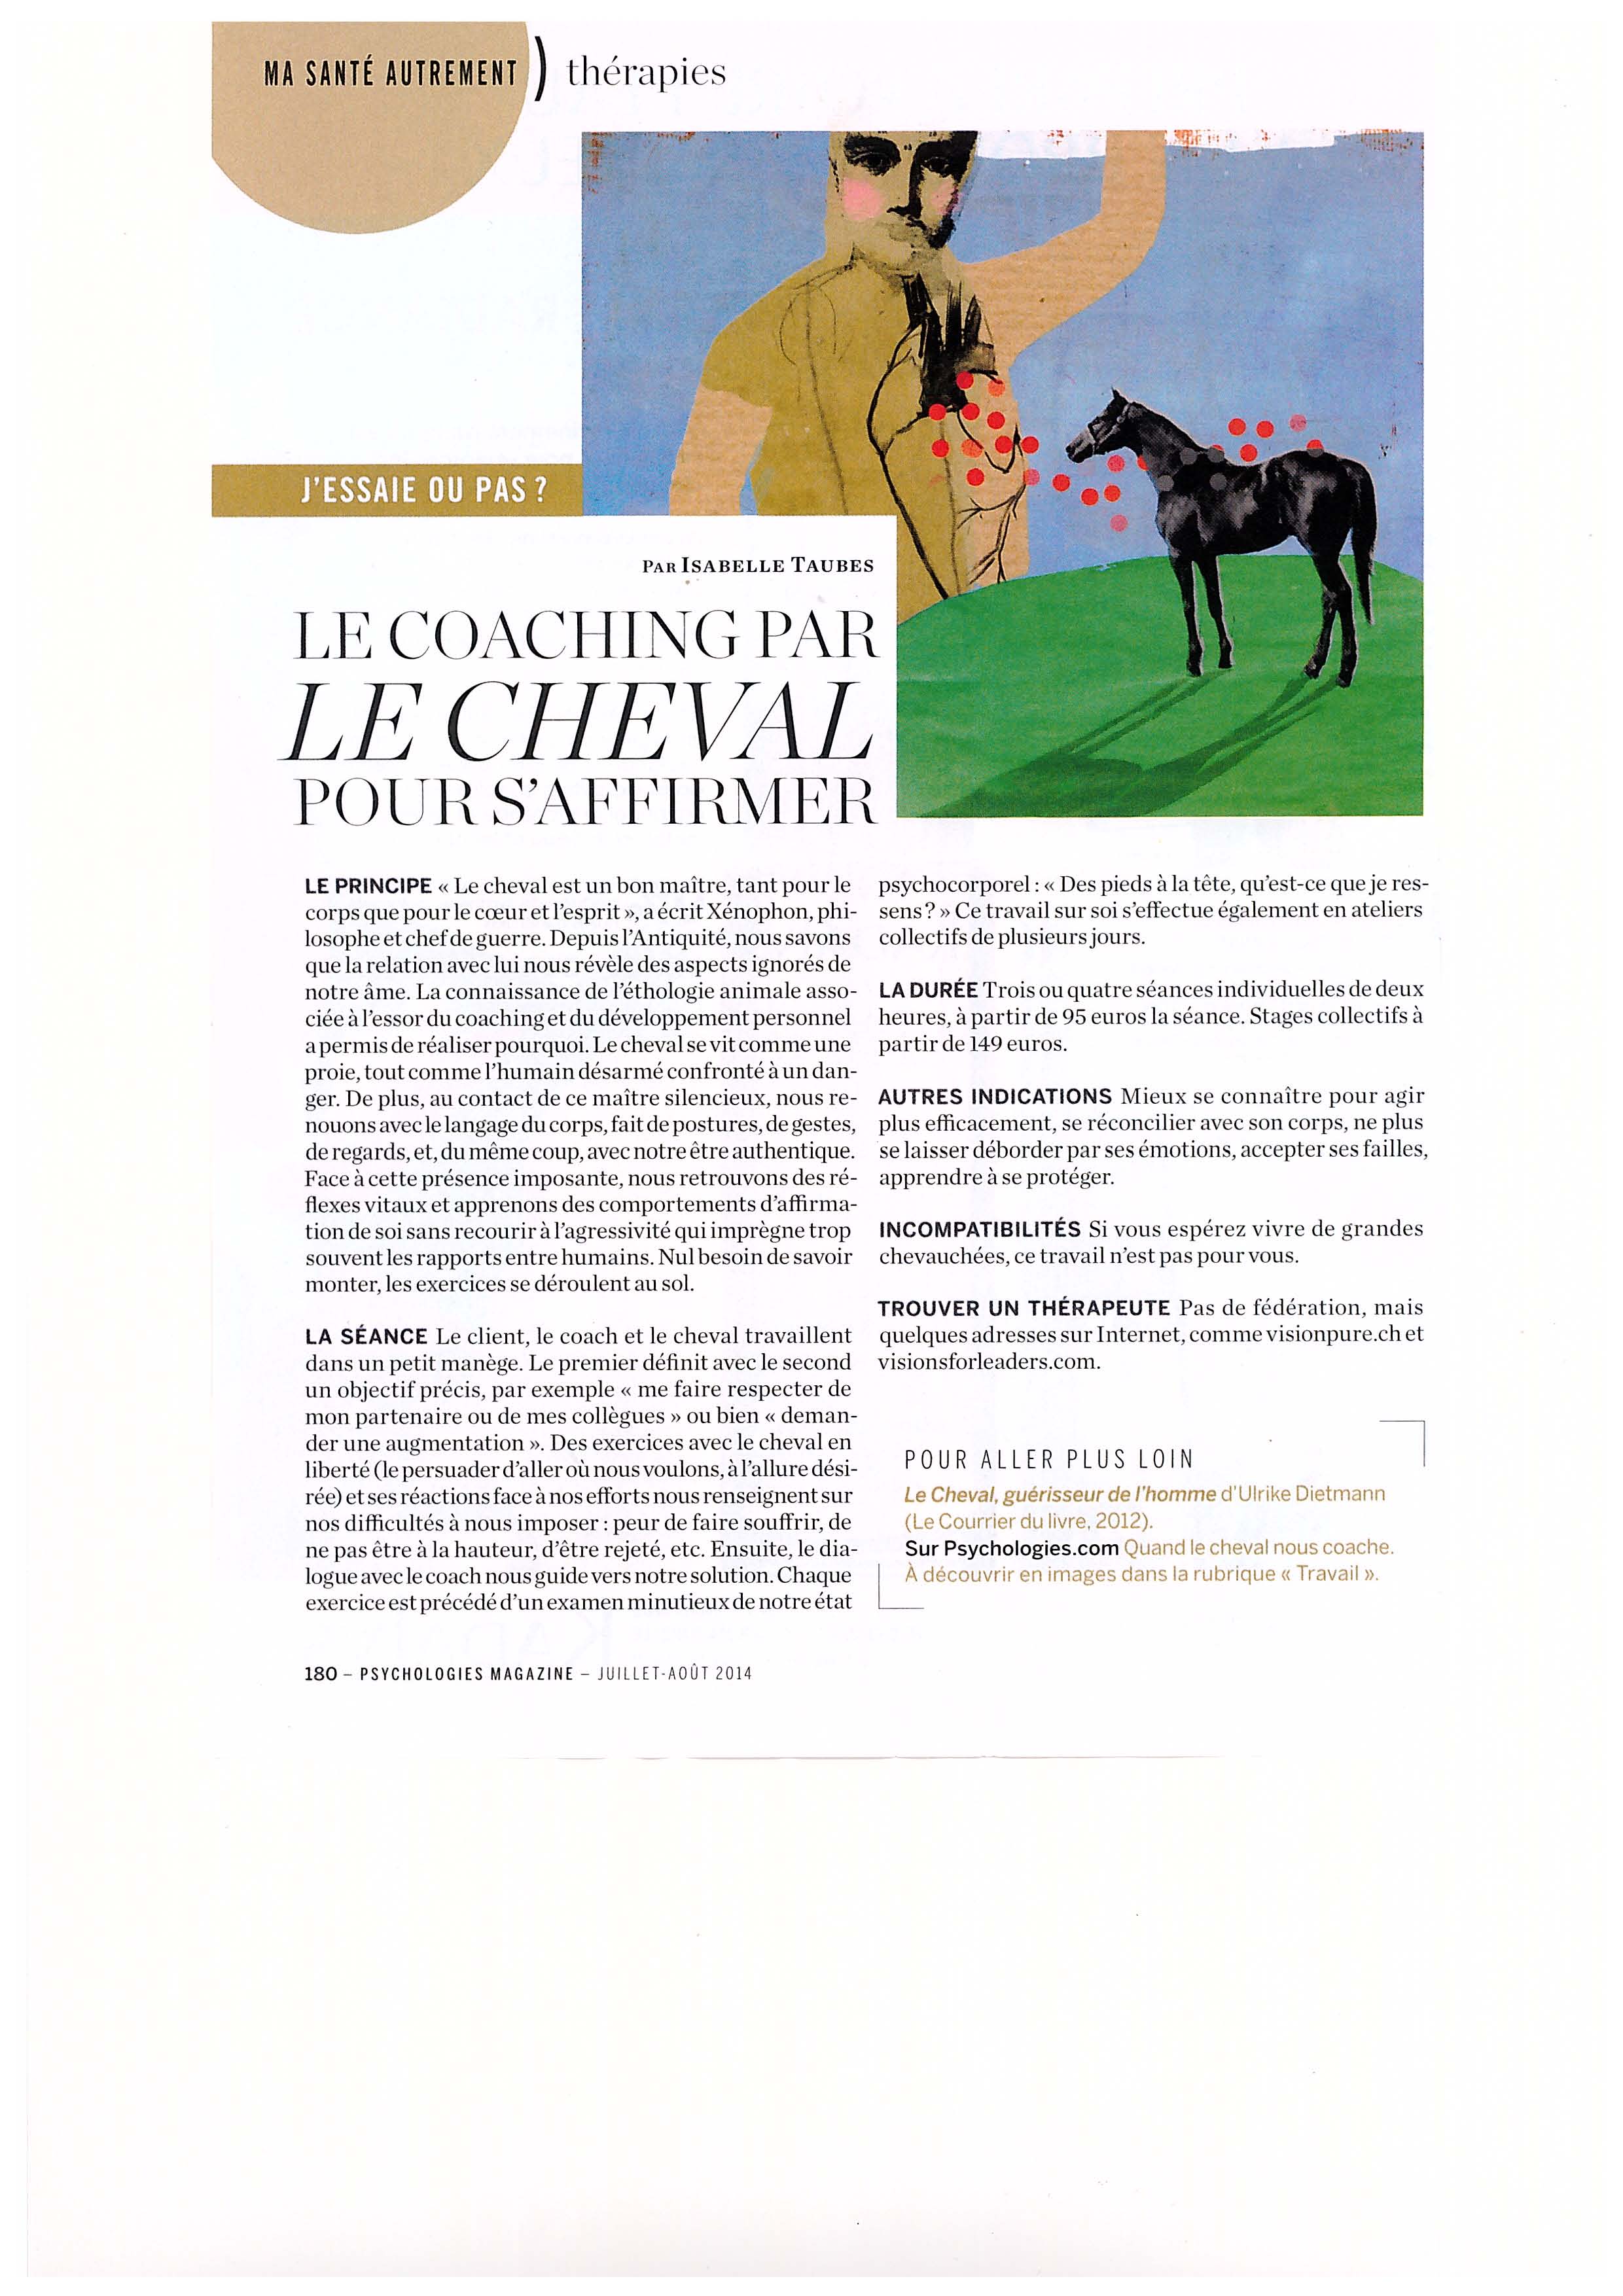 Article Psychologies Magazine Coaching par le cheval juillet août 2014